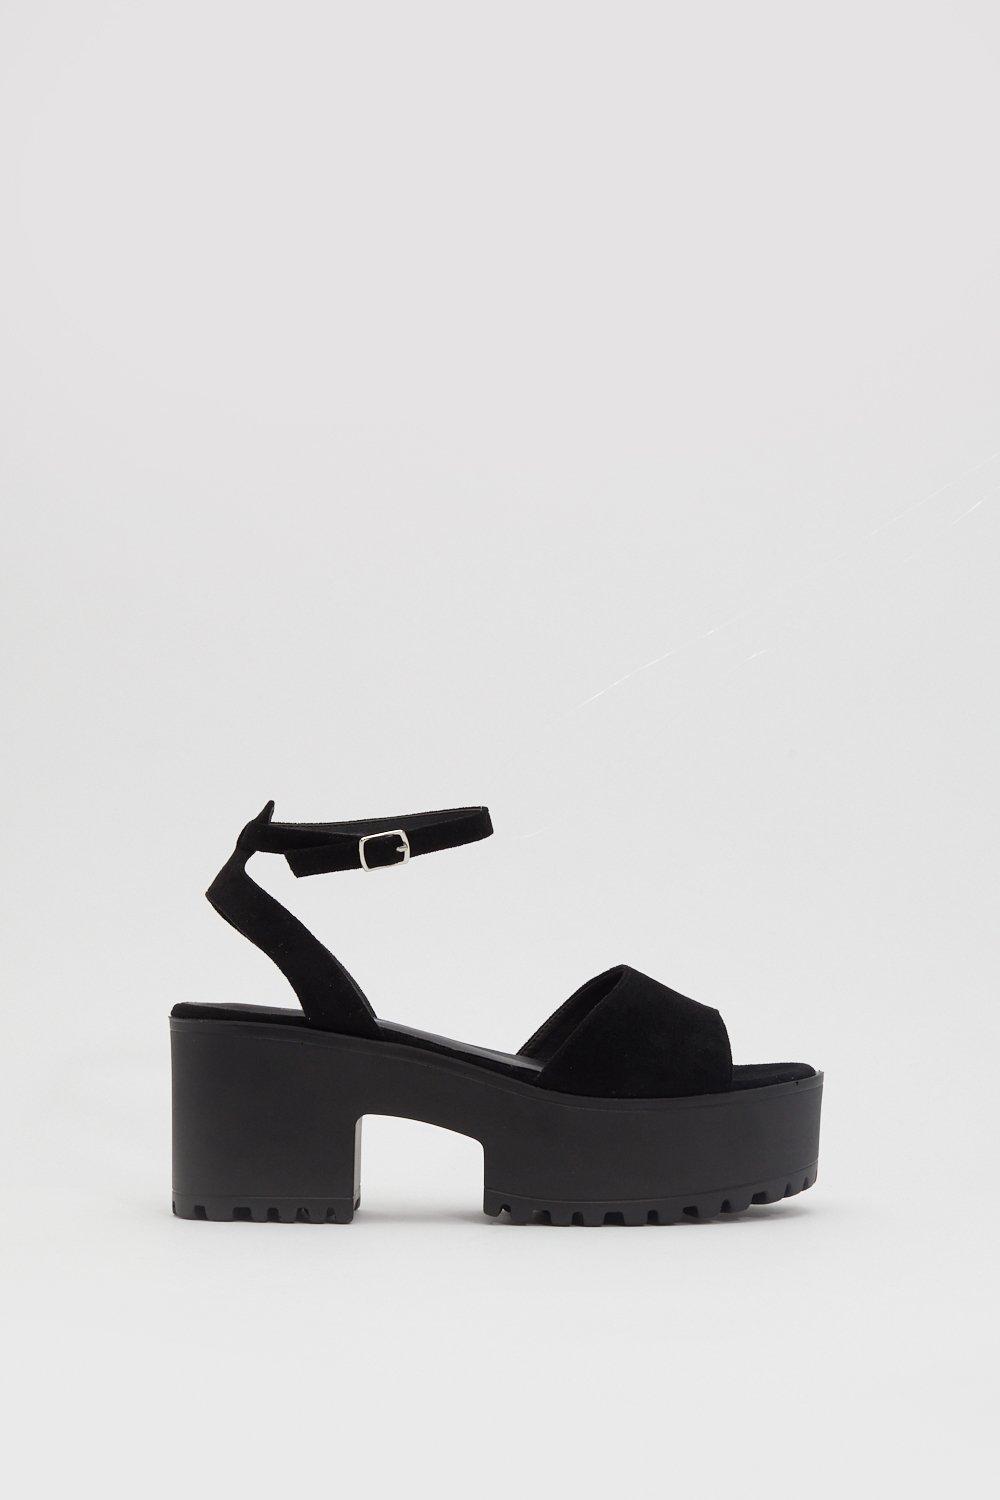 high platform sandals black